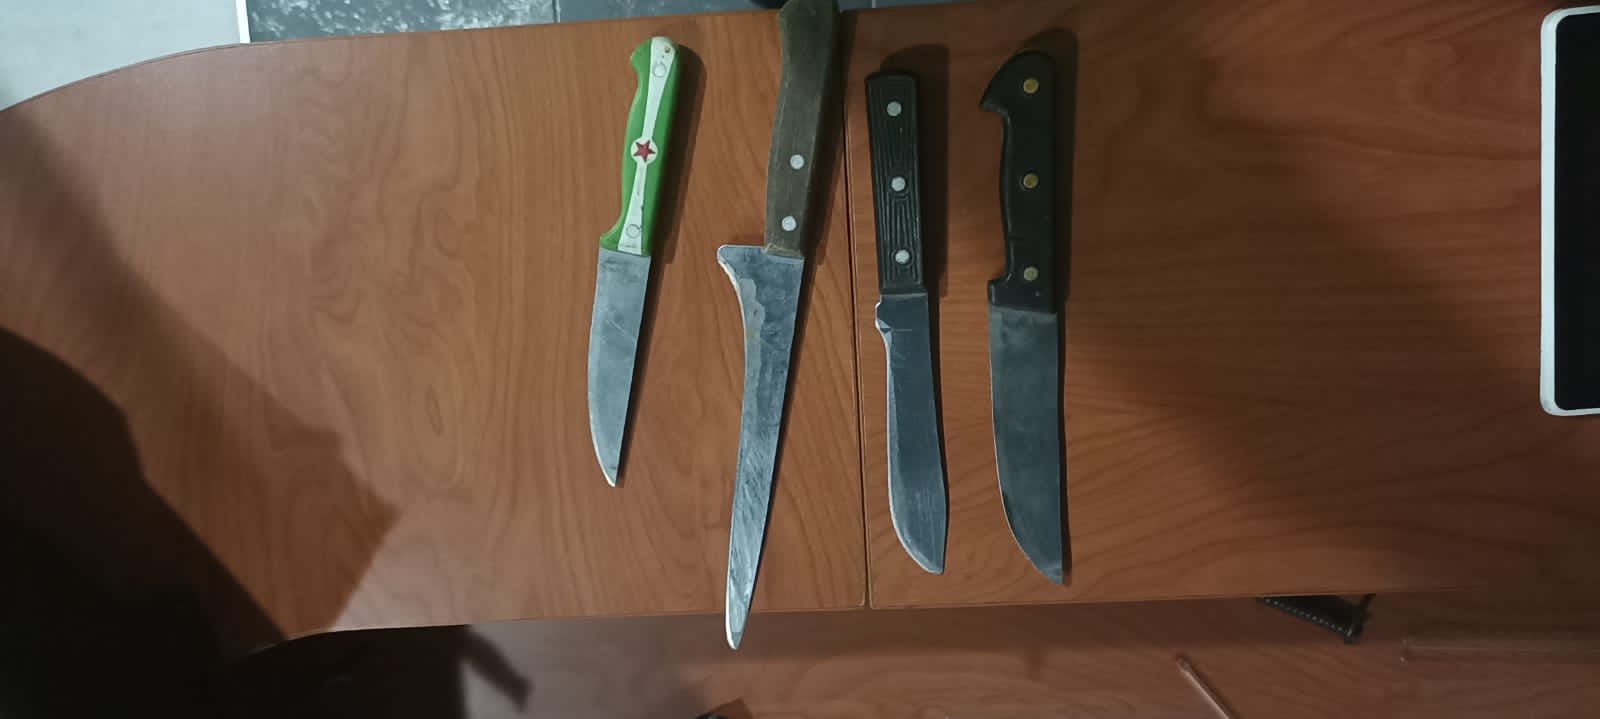 La Policía decomisa cuchillos y artículos de dudosa procedencia en el centro de Ambato